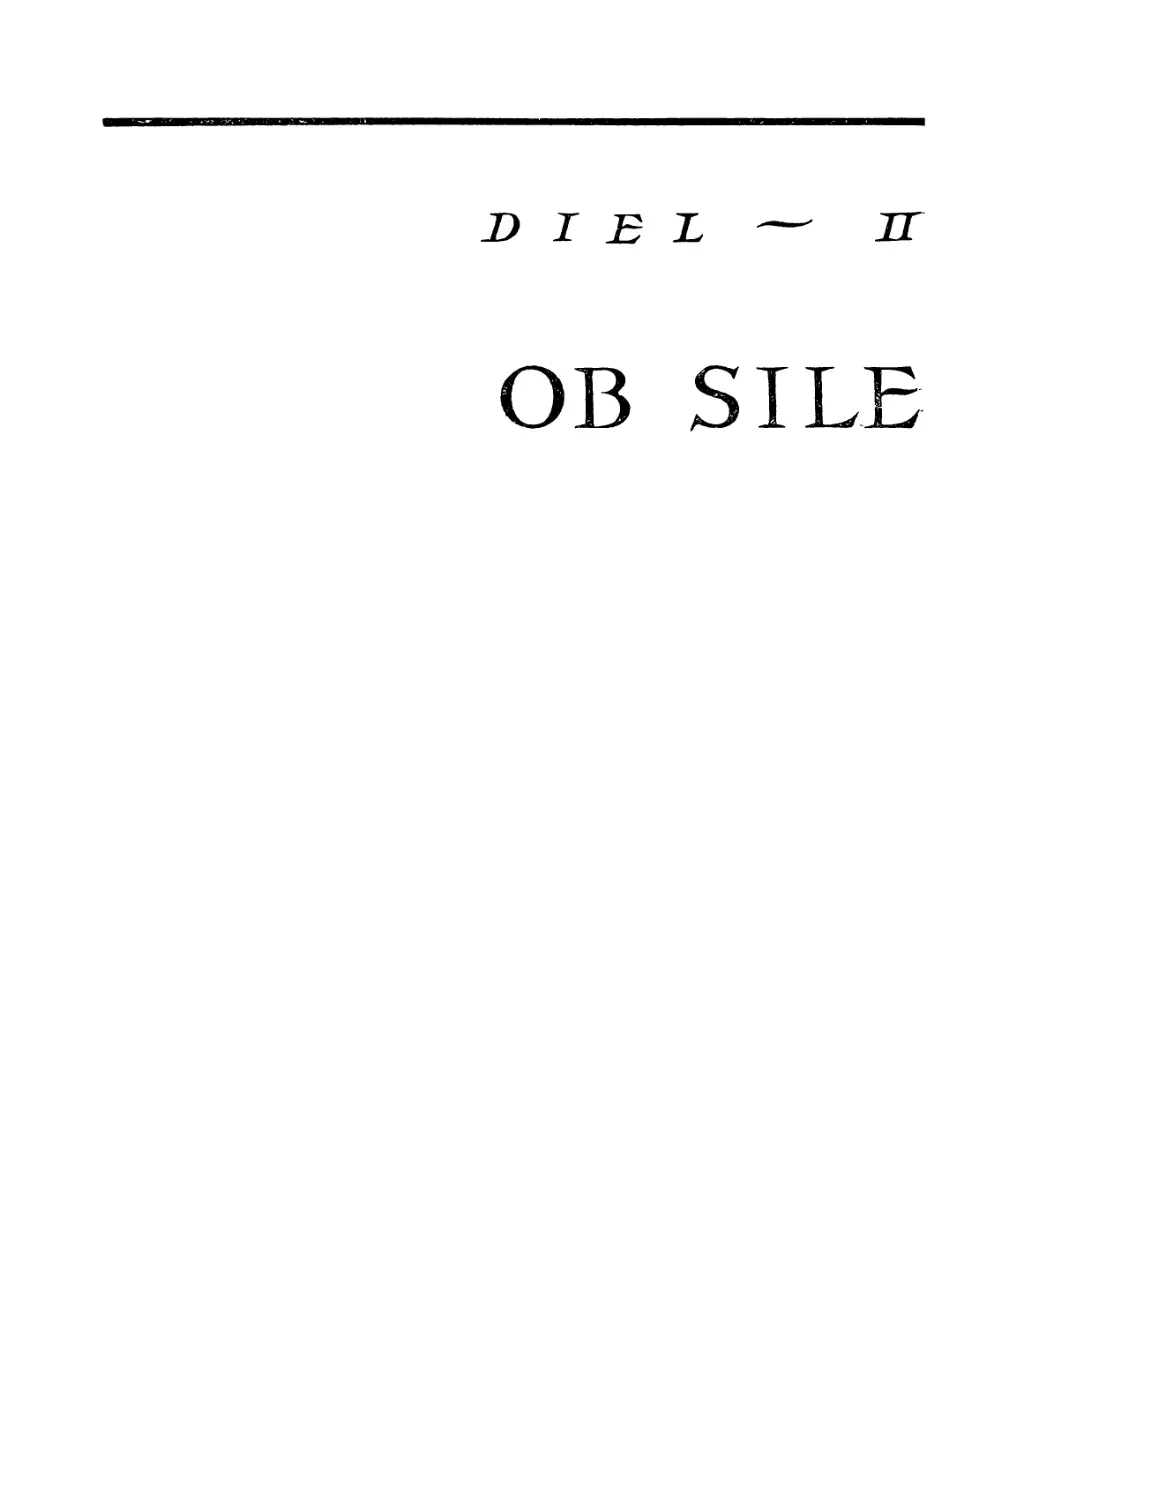 Die1 — II. Ob sile